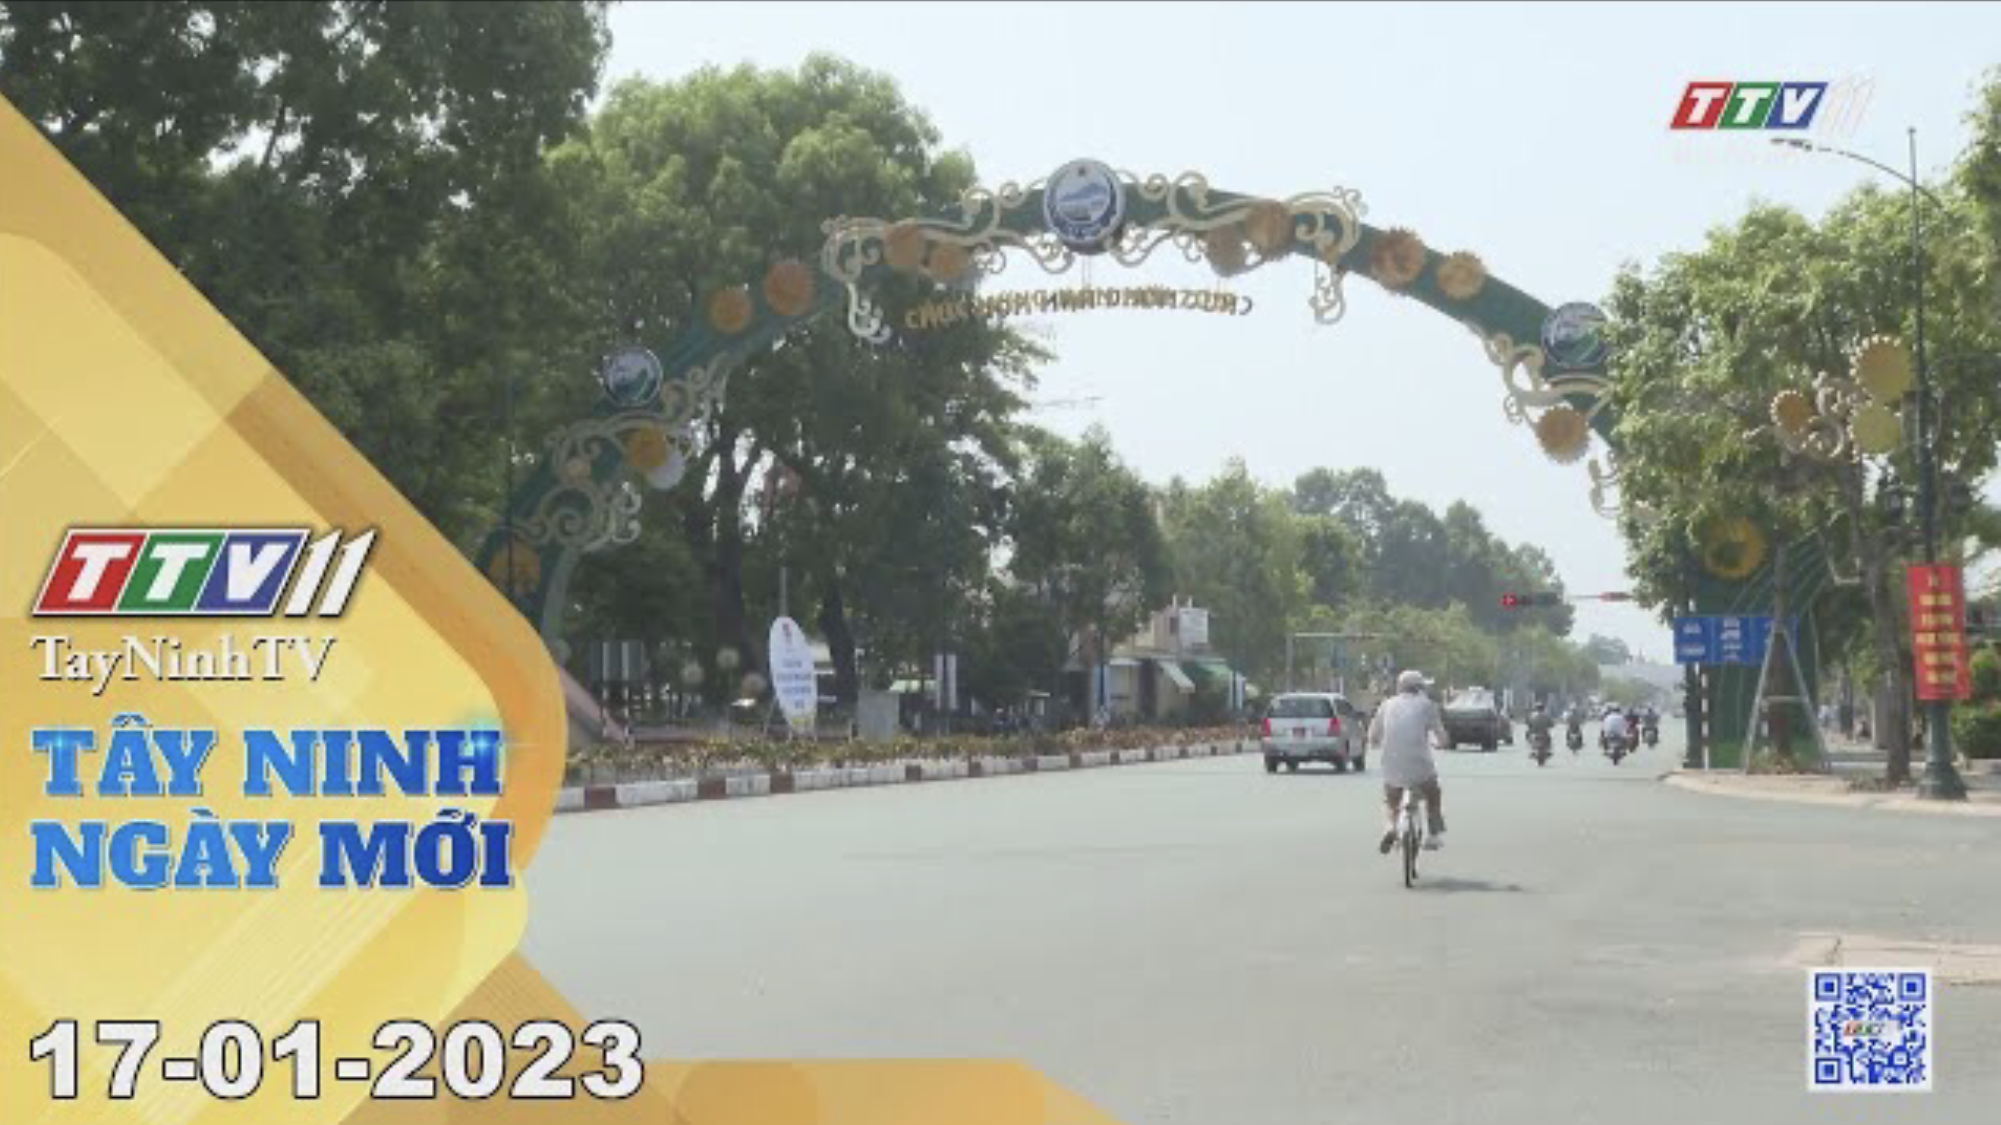 Tây Ninh ngày mới 17-01-2023 | Tin tức hôm nay | TayNinhTV